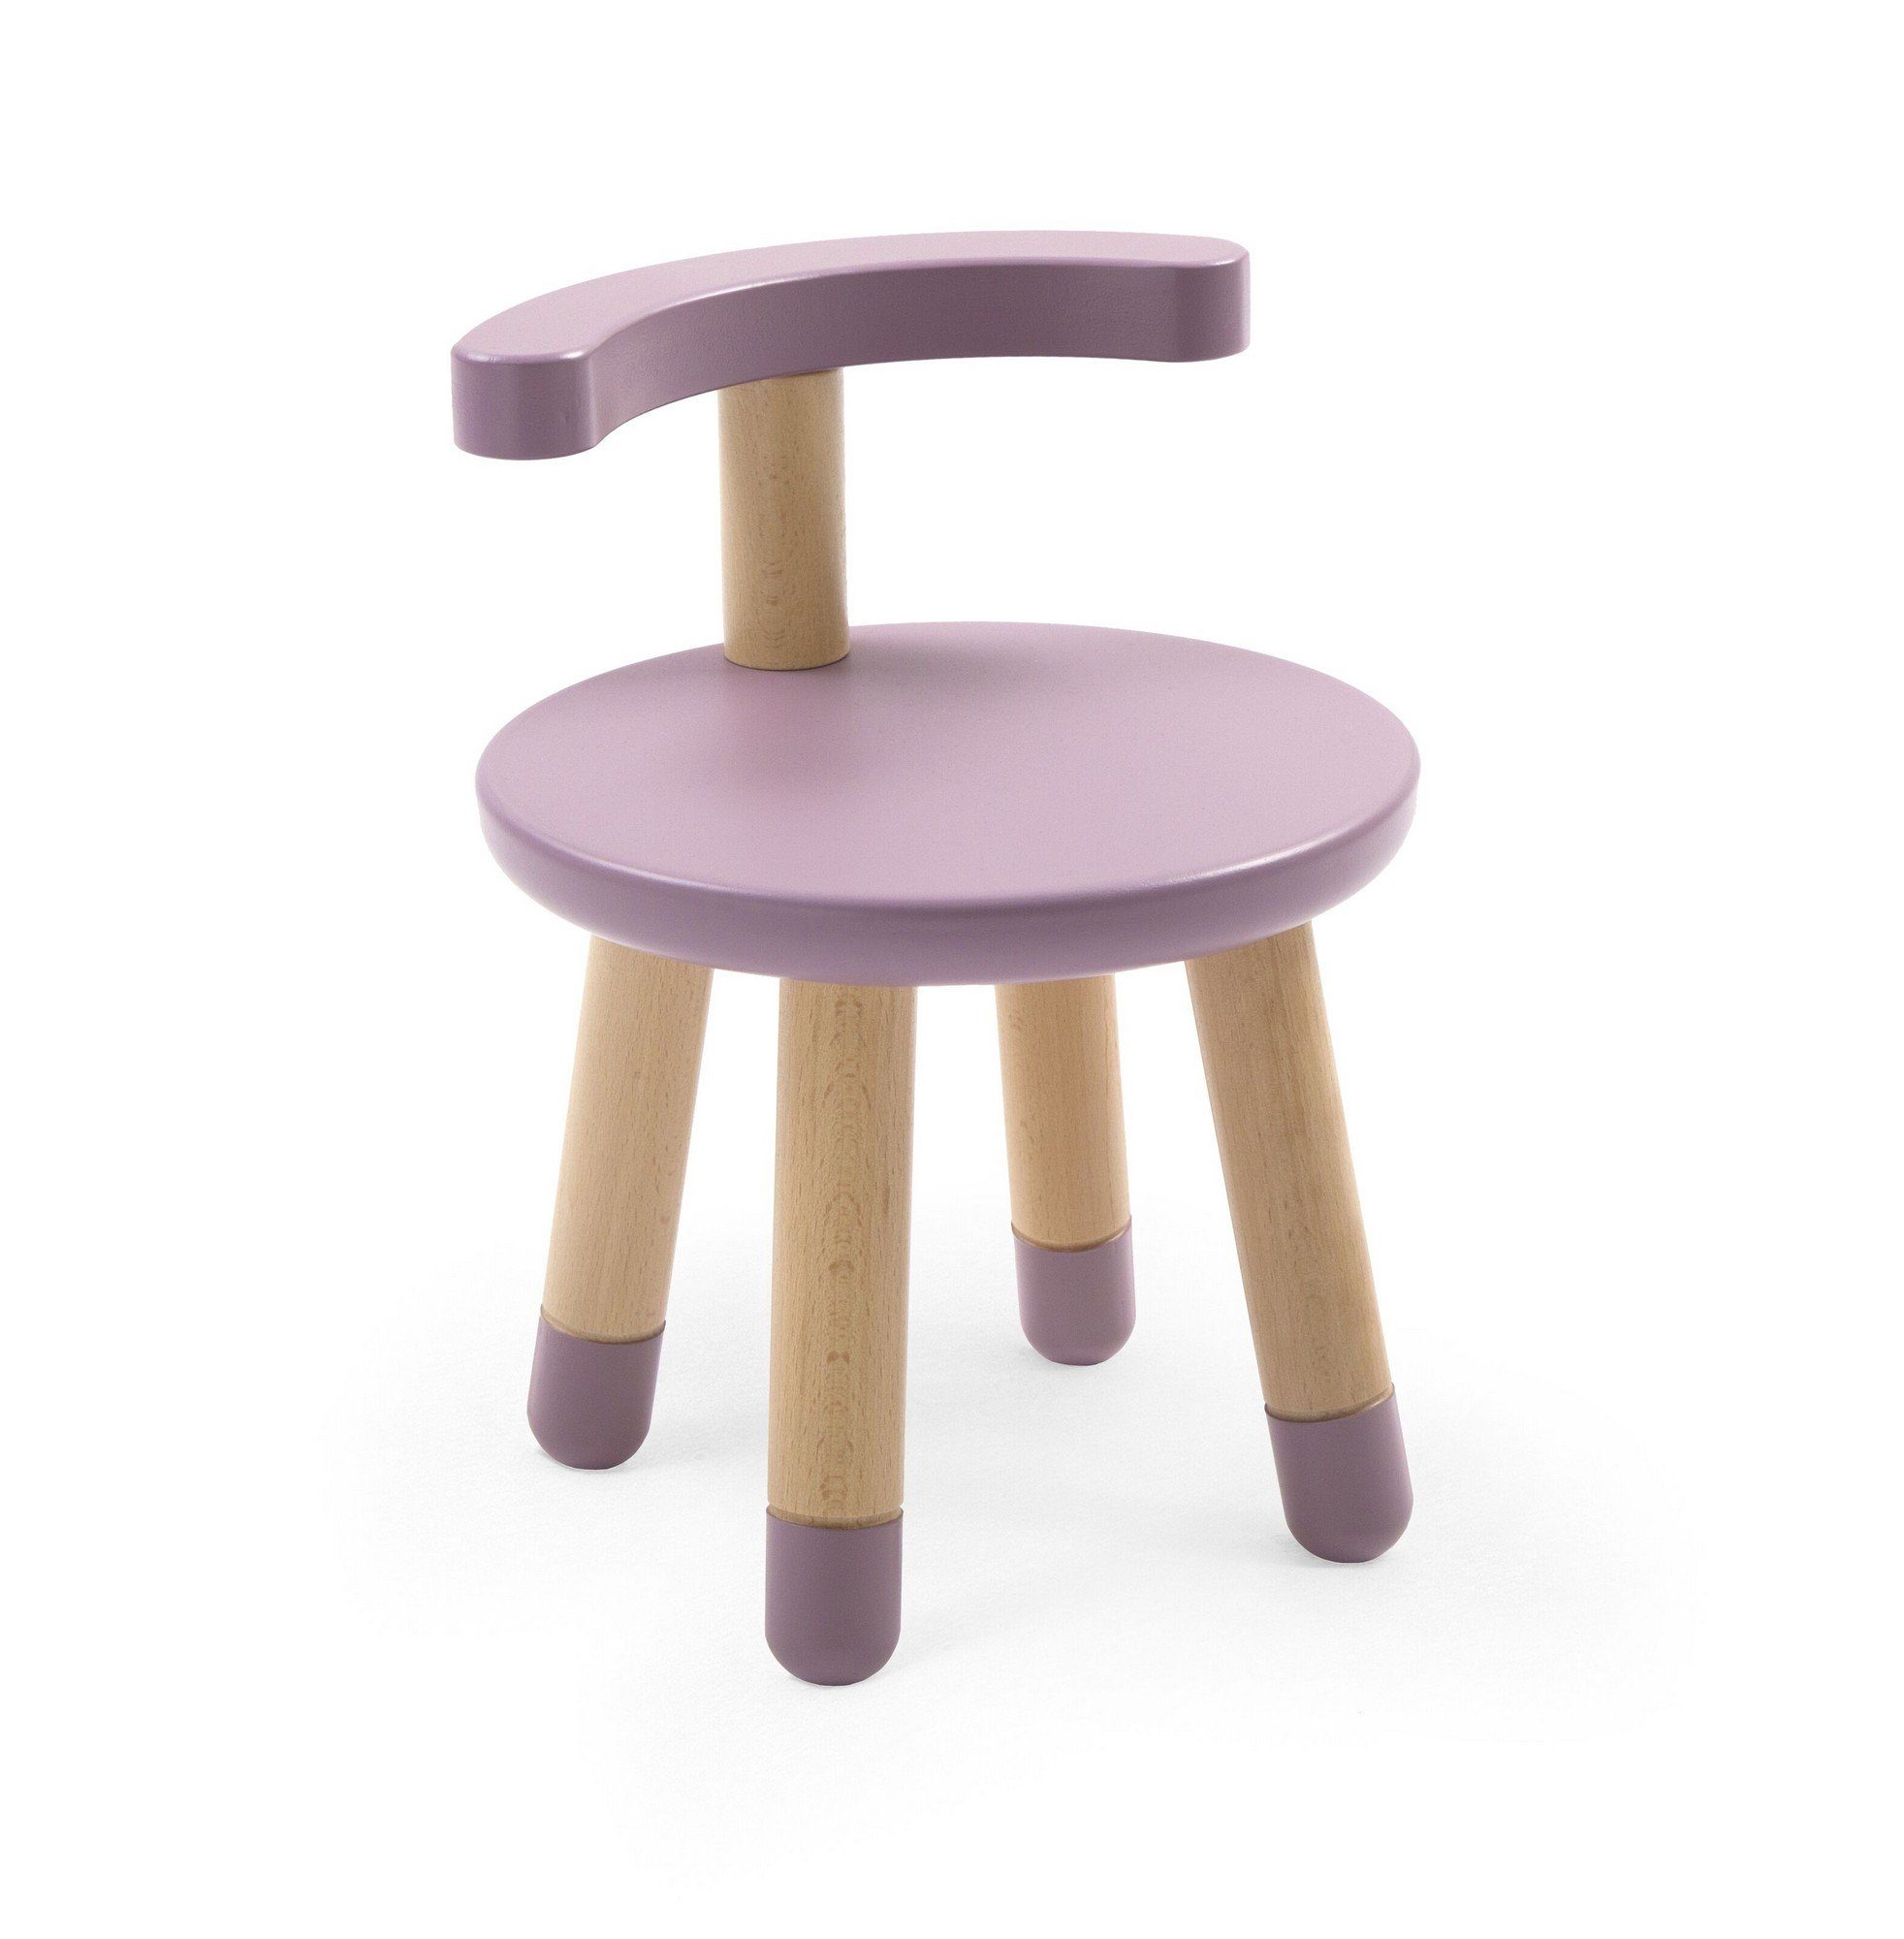 Stokke Kindersitzgruppe MuTable Stuhl - Kinder Holzstuhl für den Multifunktionsspieltisch Mutable - Die ideale Ergänzung für den Spieltisch Mauve